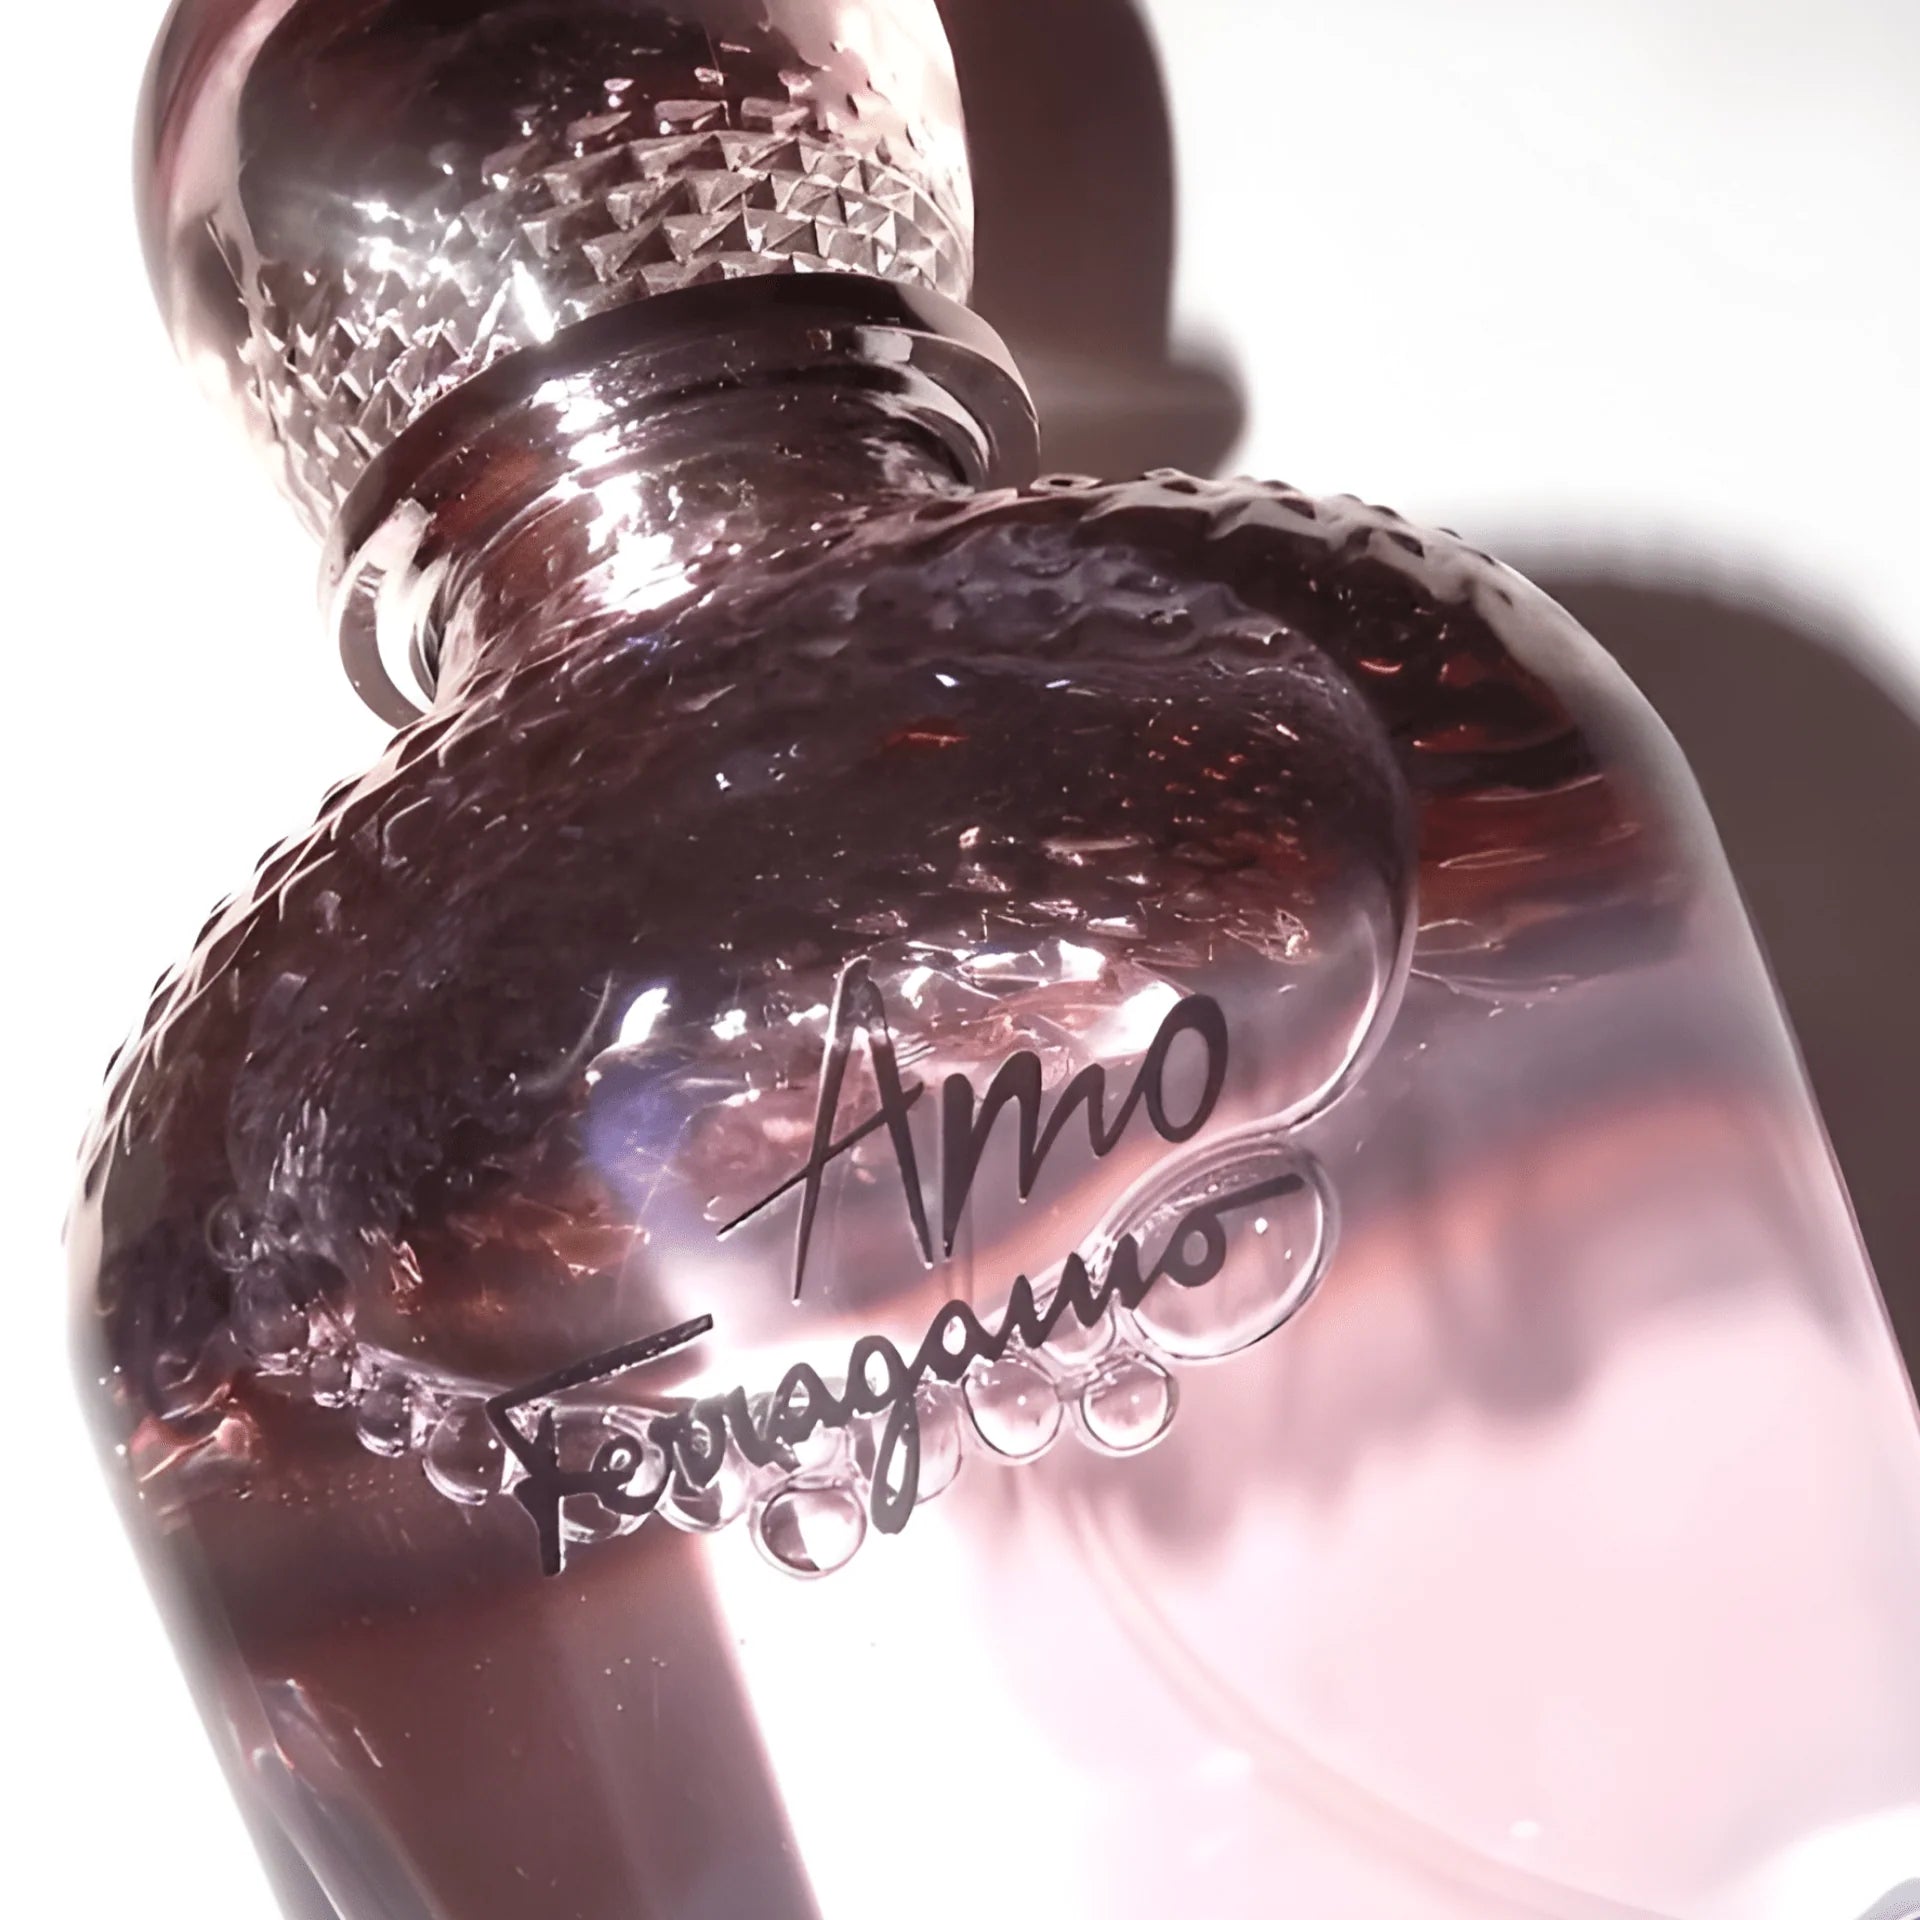 Salvatore Ferragamo Amo Ferragamo Body Lotion | My Perfume Shop Australia